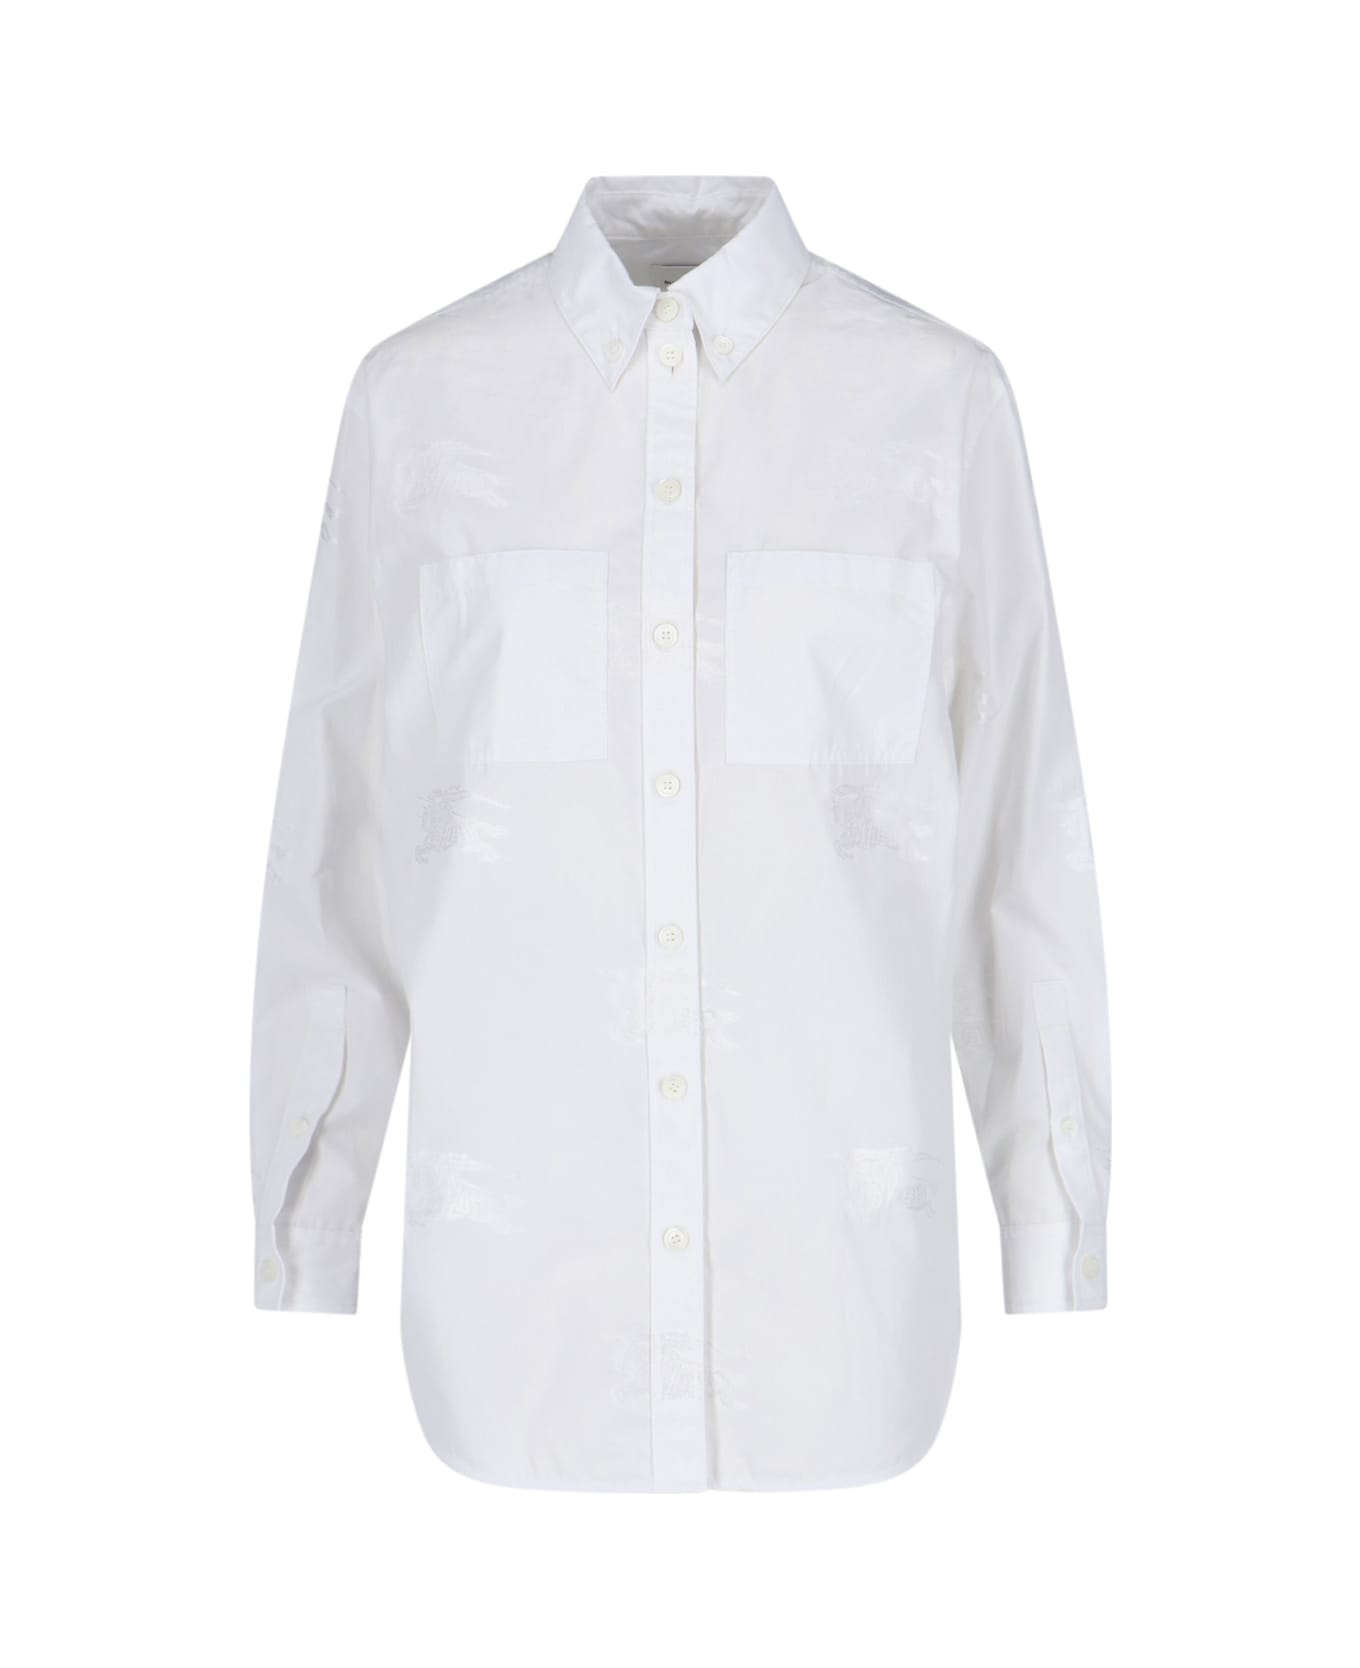 Burberry Ivanna Shirt - White シャツ